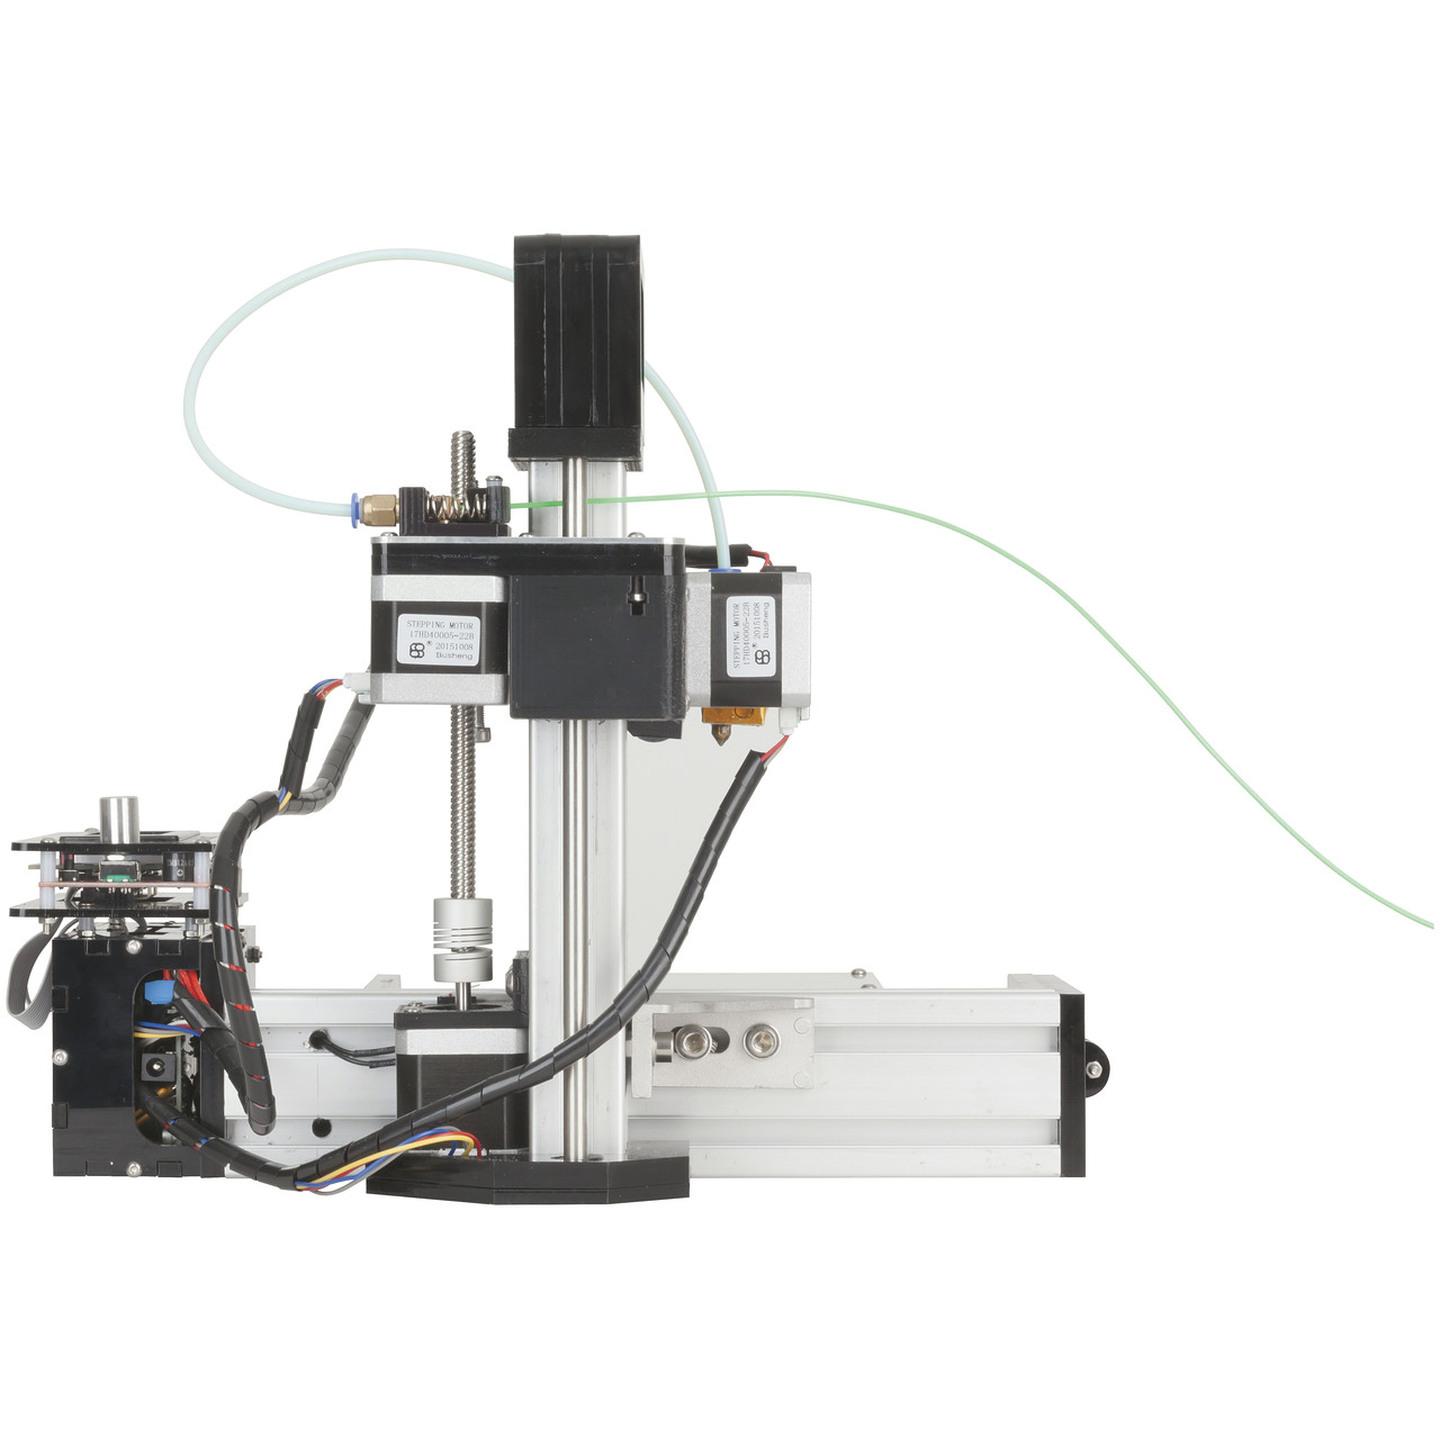 Duinotech Mini 3D Printer